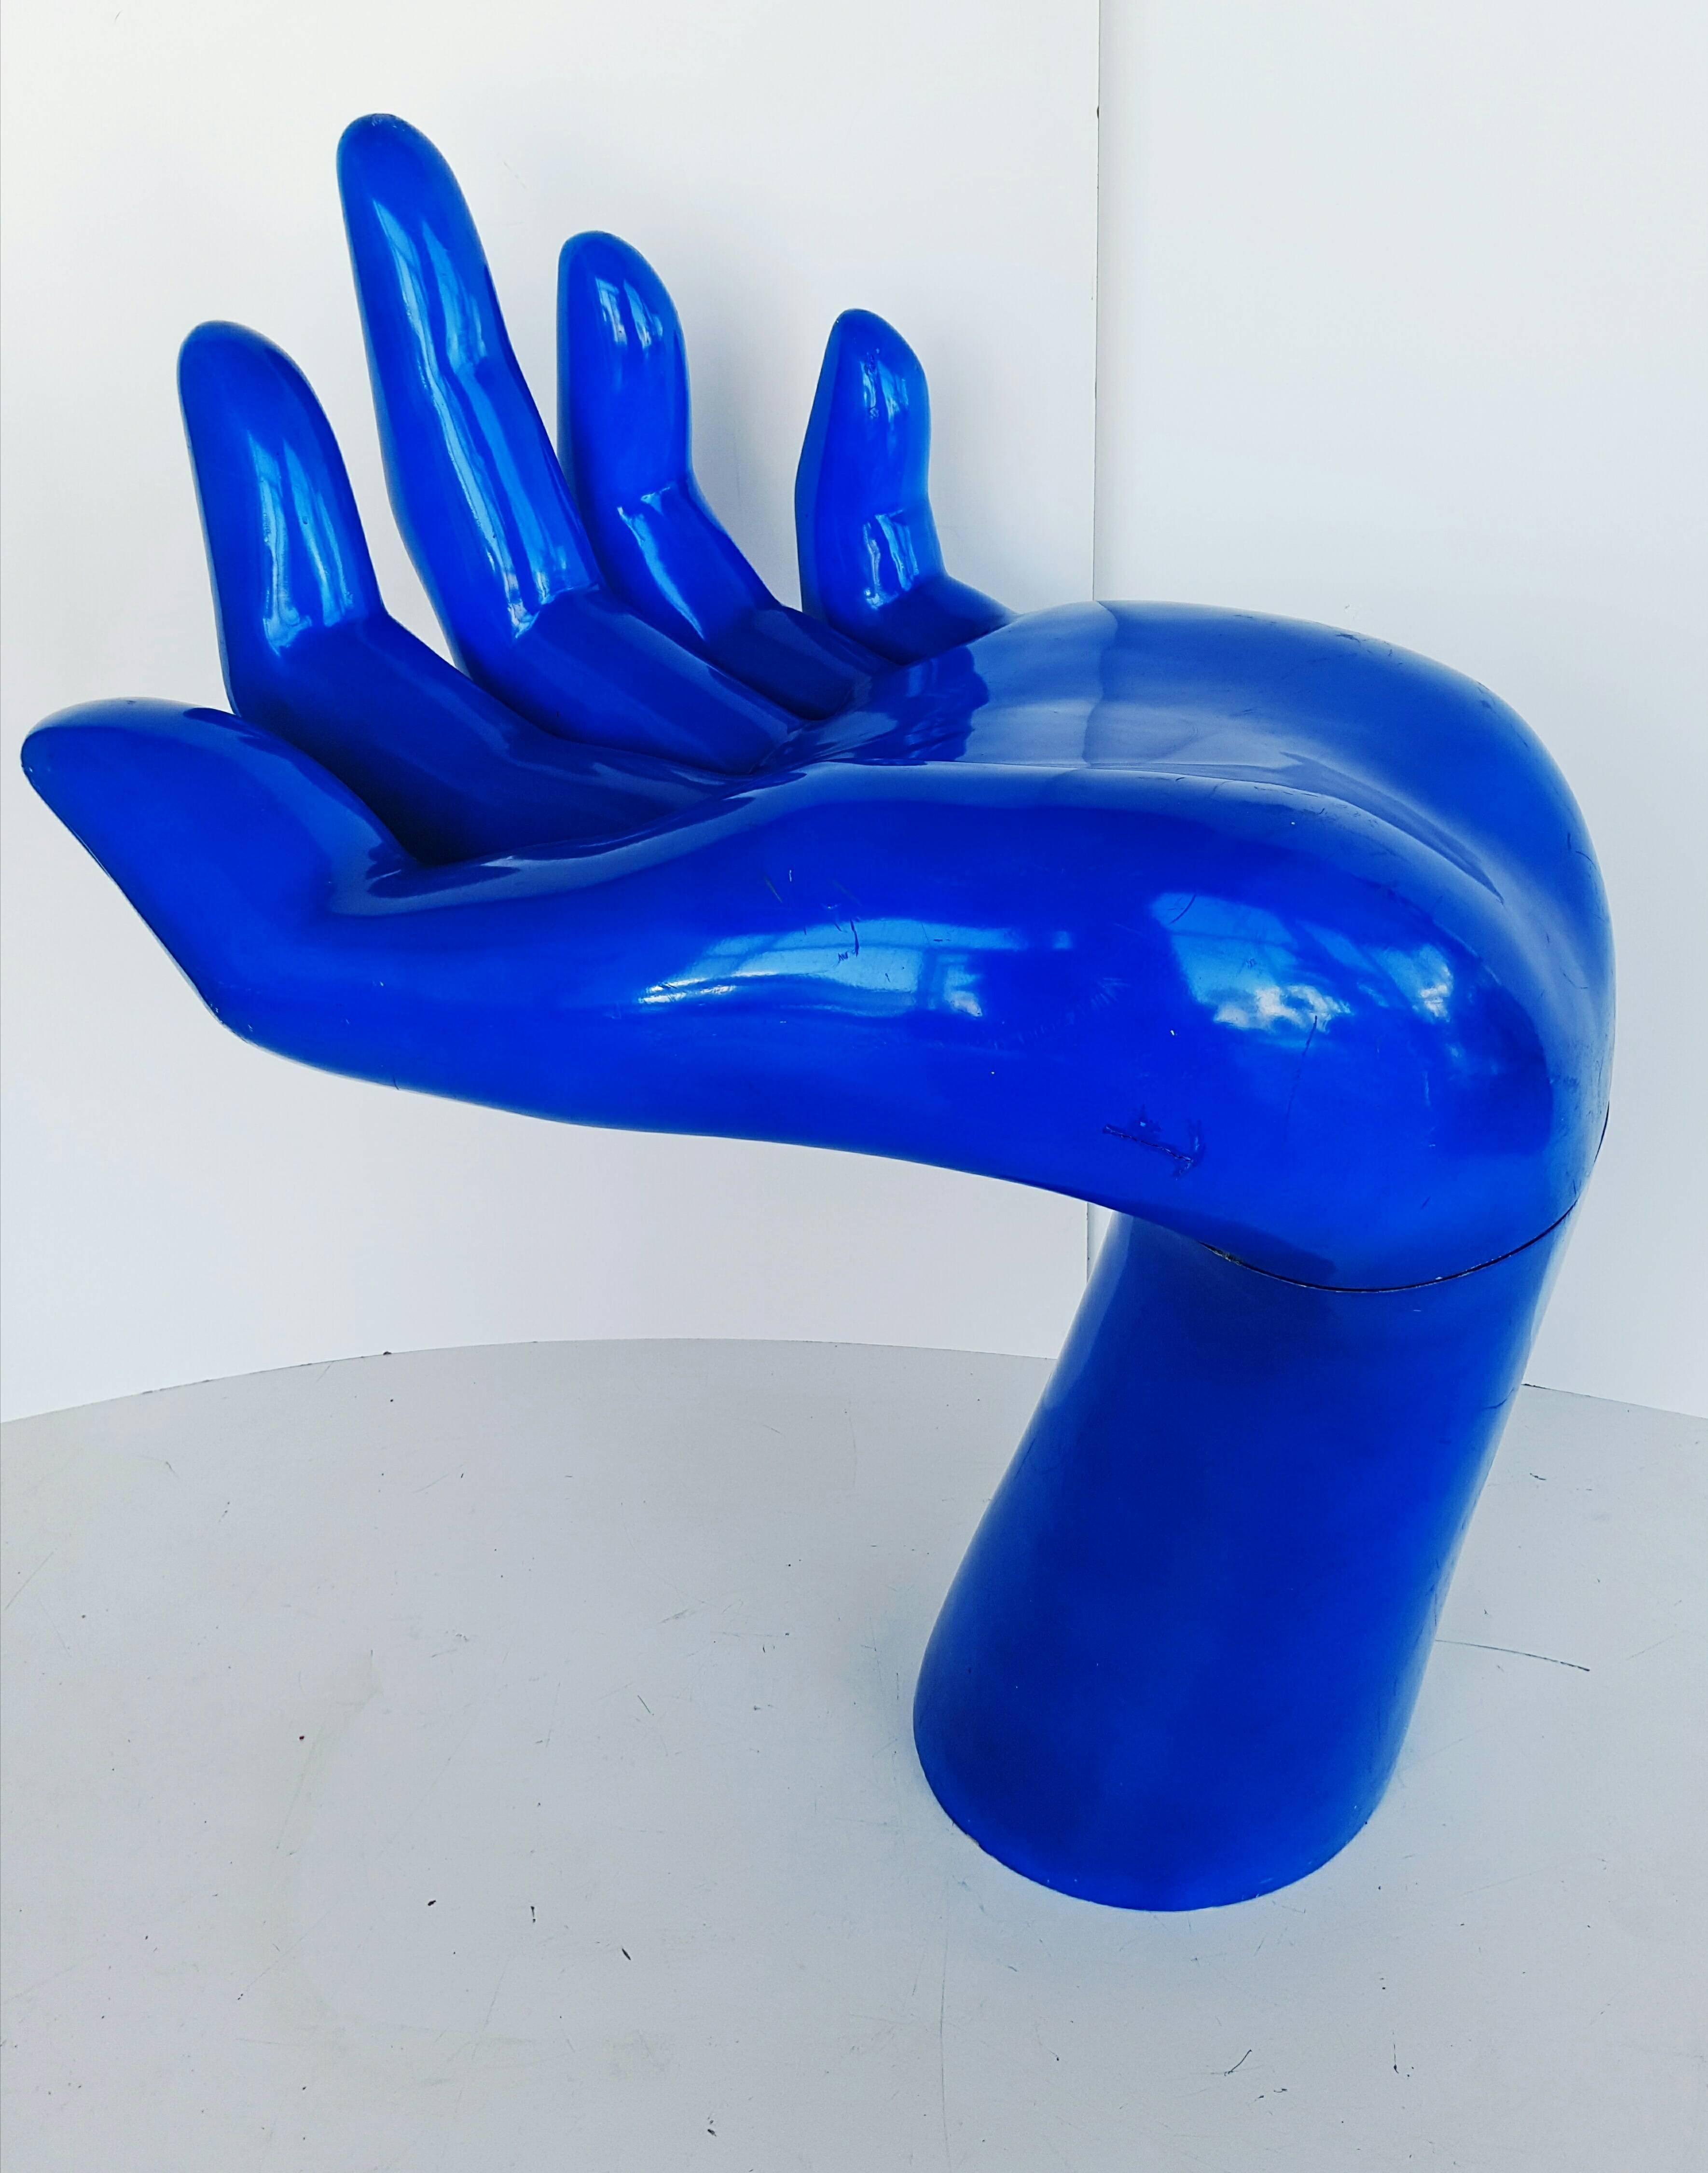 Rare and Monumental Blue Indigo Hand, 1970s For Sale 3